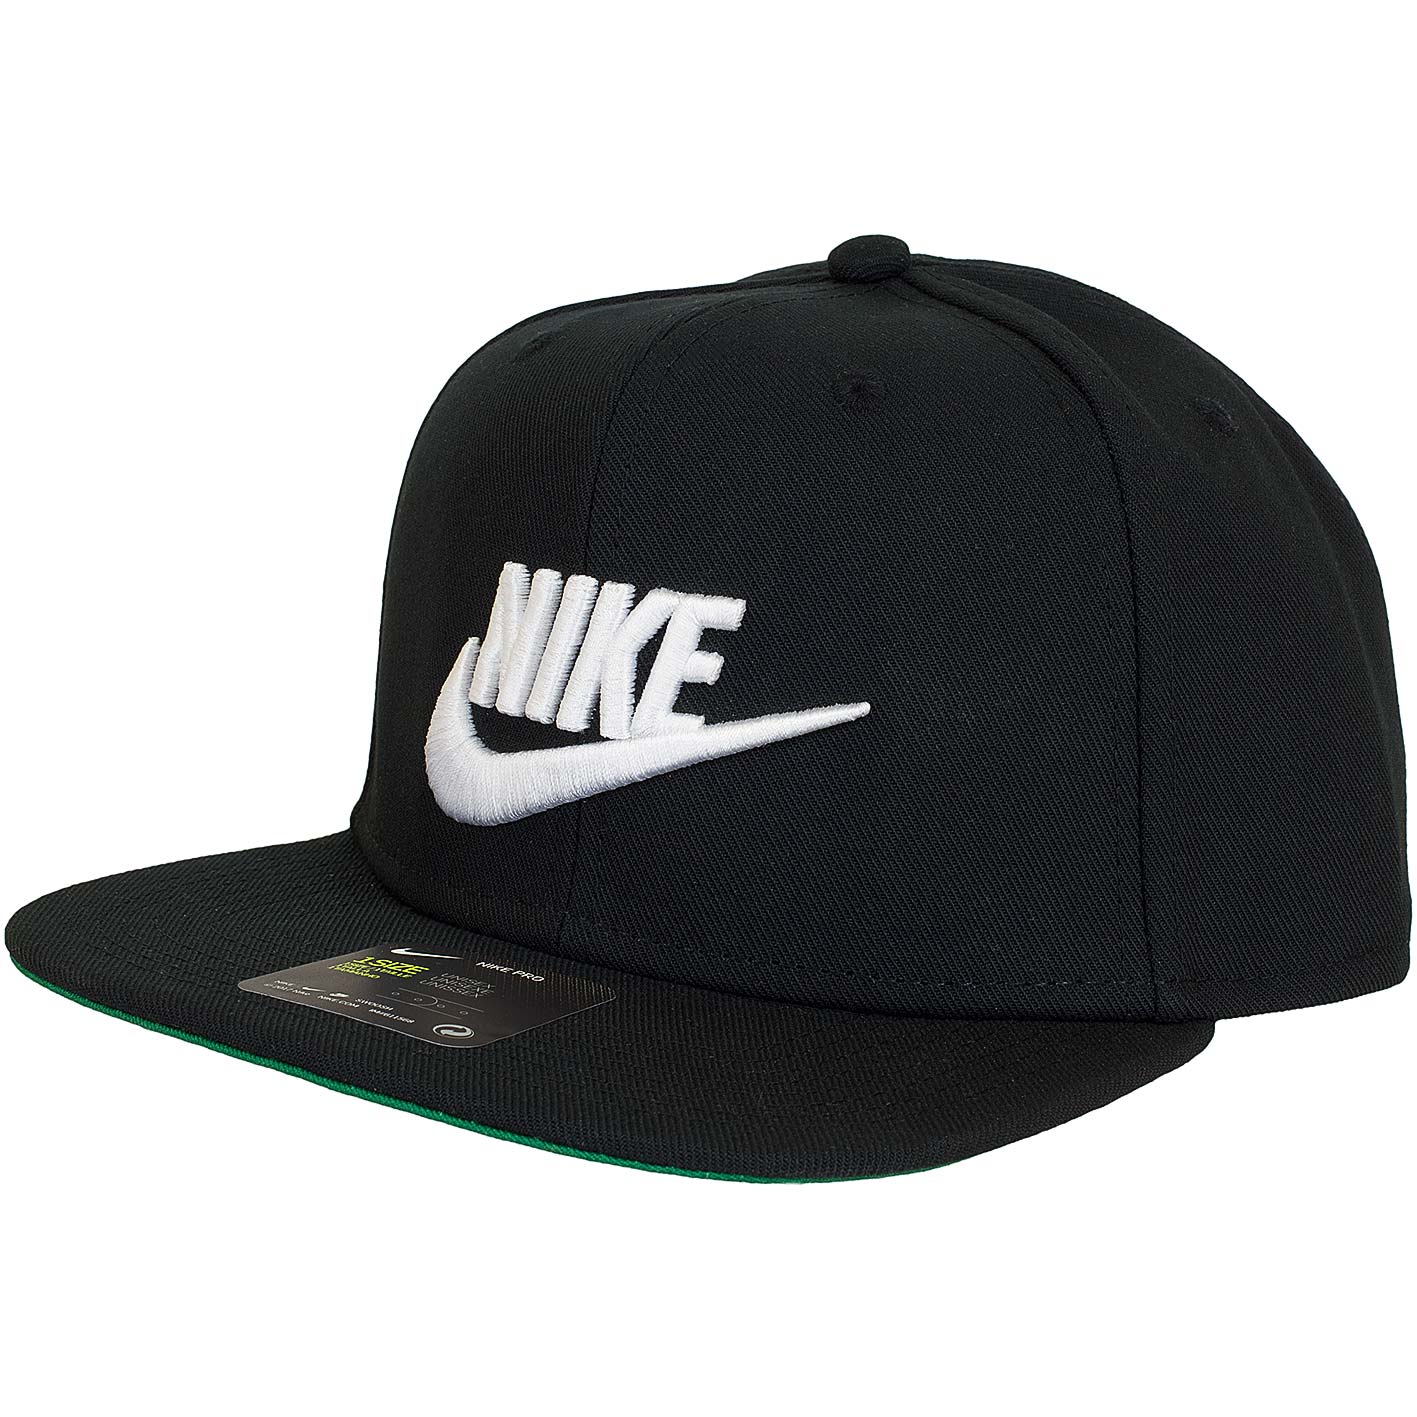 ☆ Nike Cap Futura Pro schwarz - hier bestellen!